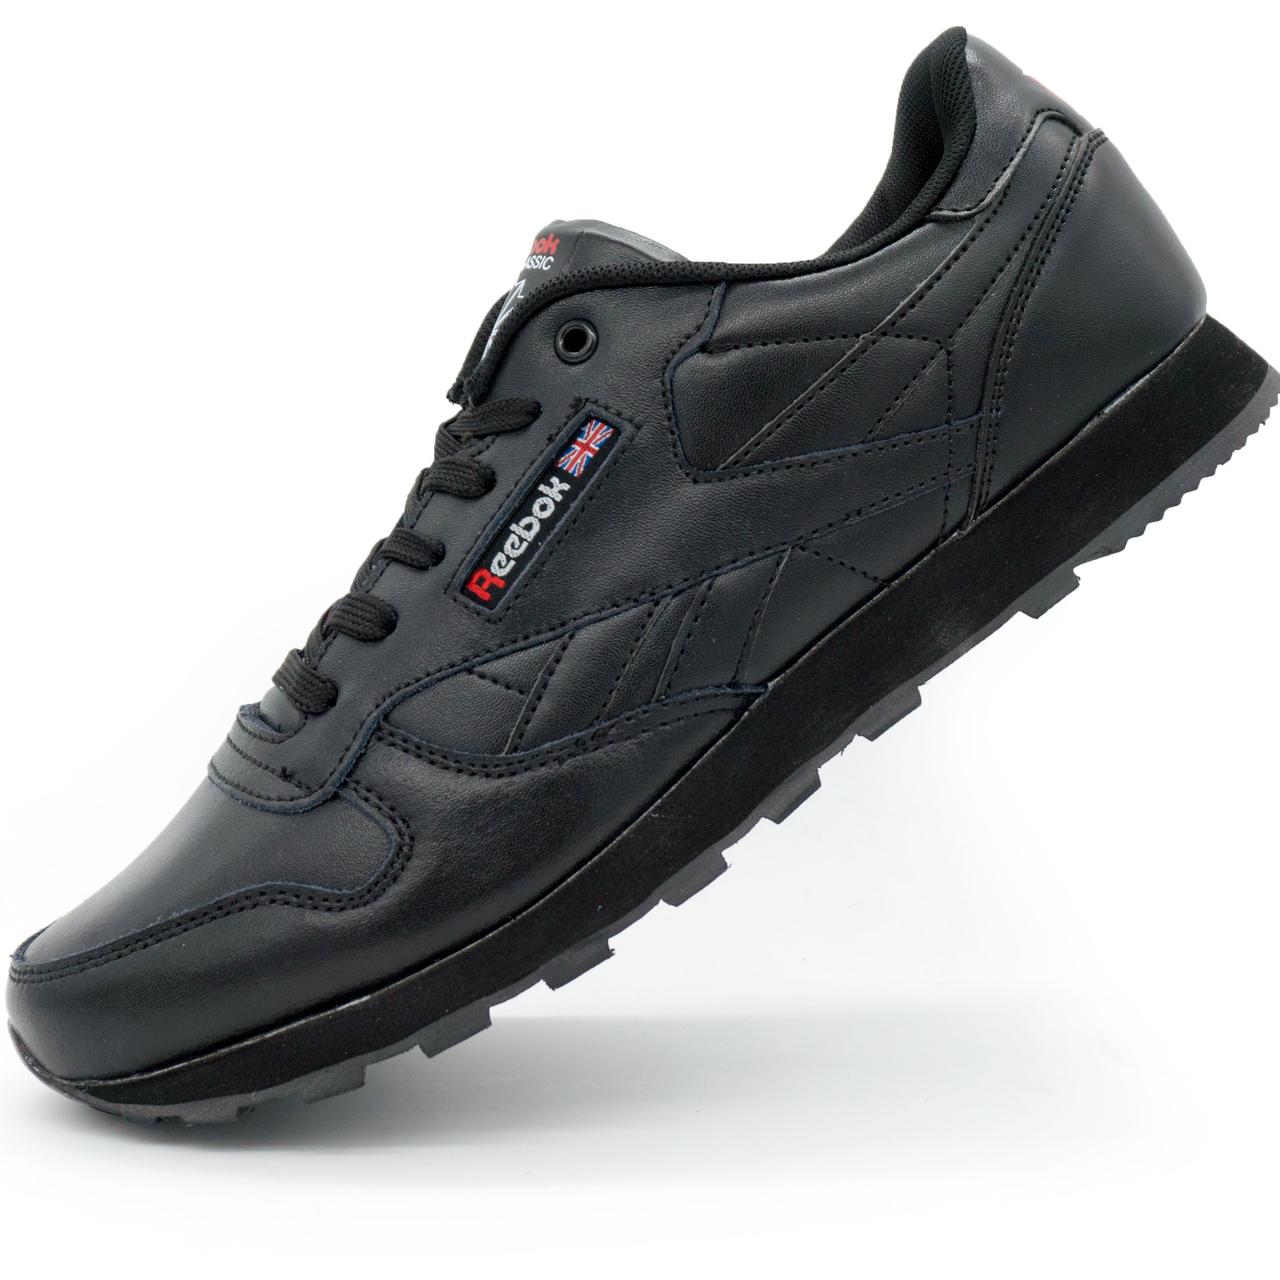 Жіночі кросівки Reebok classic leather black (Рібок класик чорні, шкіра) 38. Розміри в наявності: 38.